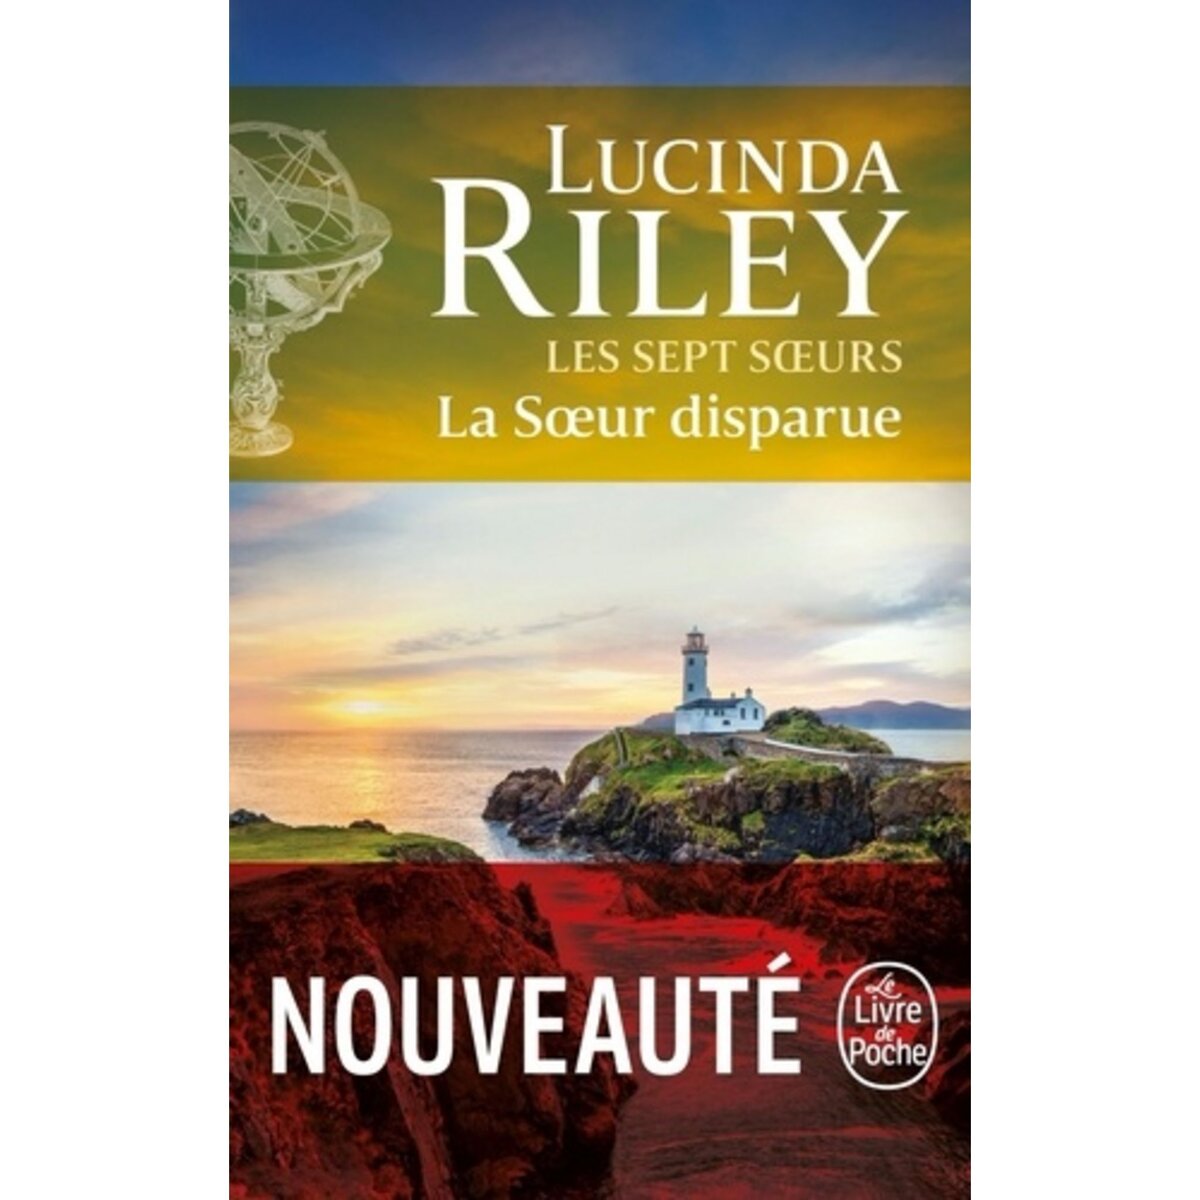 La Soeur disparue, roman de Lucinda Riley – A livre ouvert